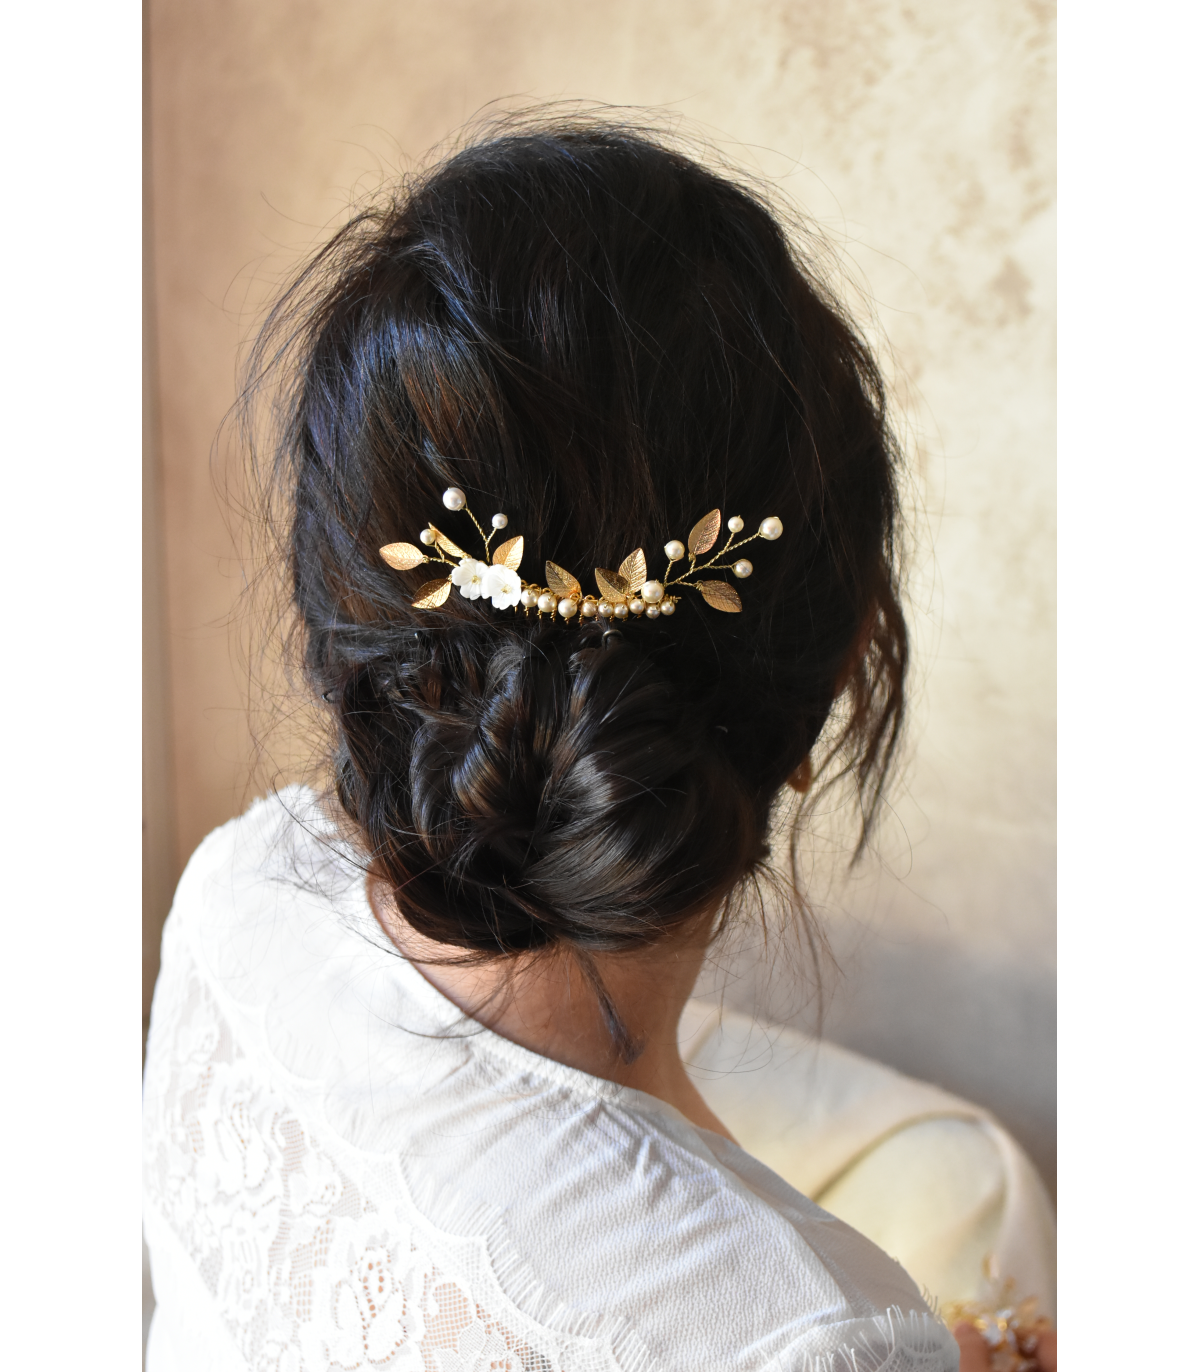 Peigne à cheveux Lilas pour le chignon de la mariée, agrémenté de branches de feuilles dorées, de perles et de fleurs de nacre.